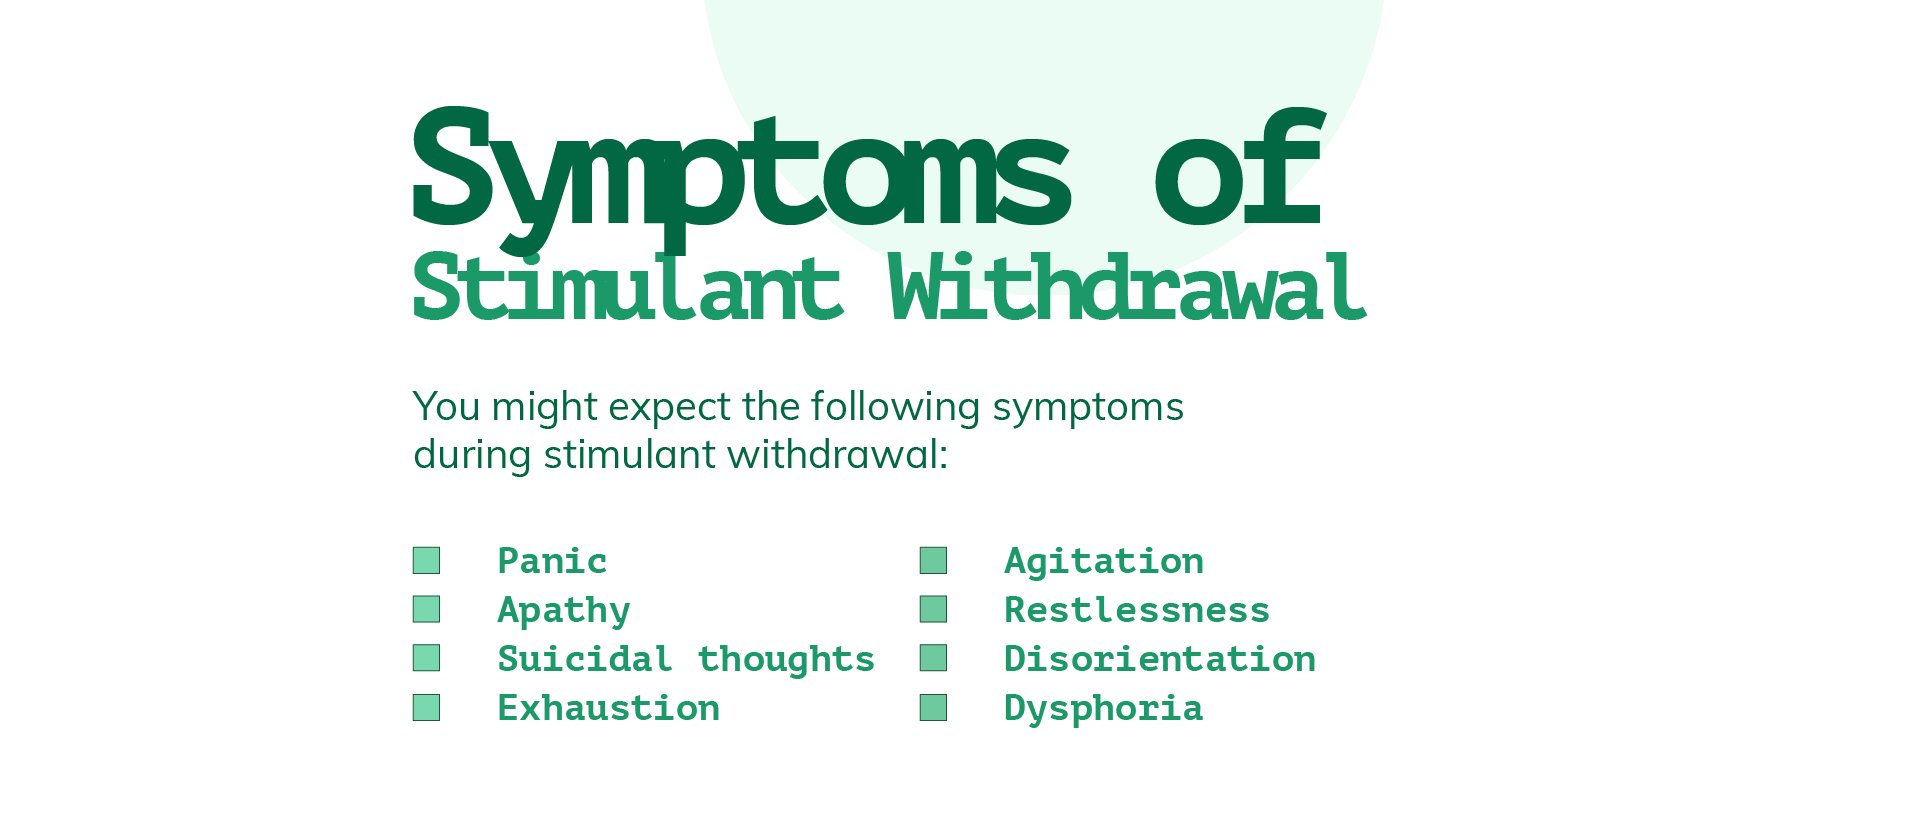 Symptoms of Stimulant Withdrawal